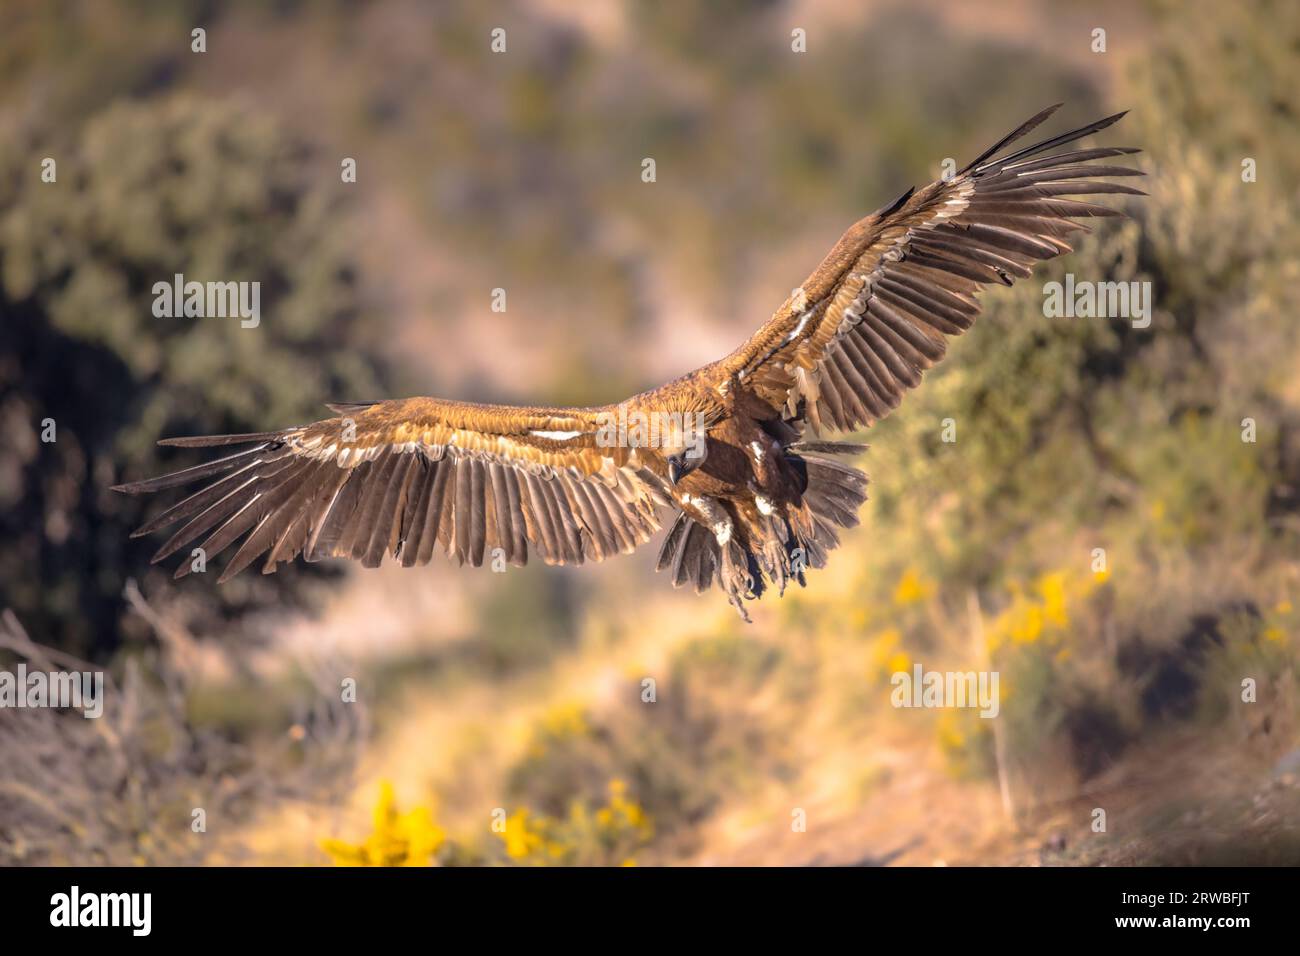 Grifone (Gips fulvus) volare e prepararsi ad atterrare nei Pirenei spagnoli, Catalogna, Spagna, aprile. Questo è un grande avvoltoio del Vecchio mondo nel Foto Stock